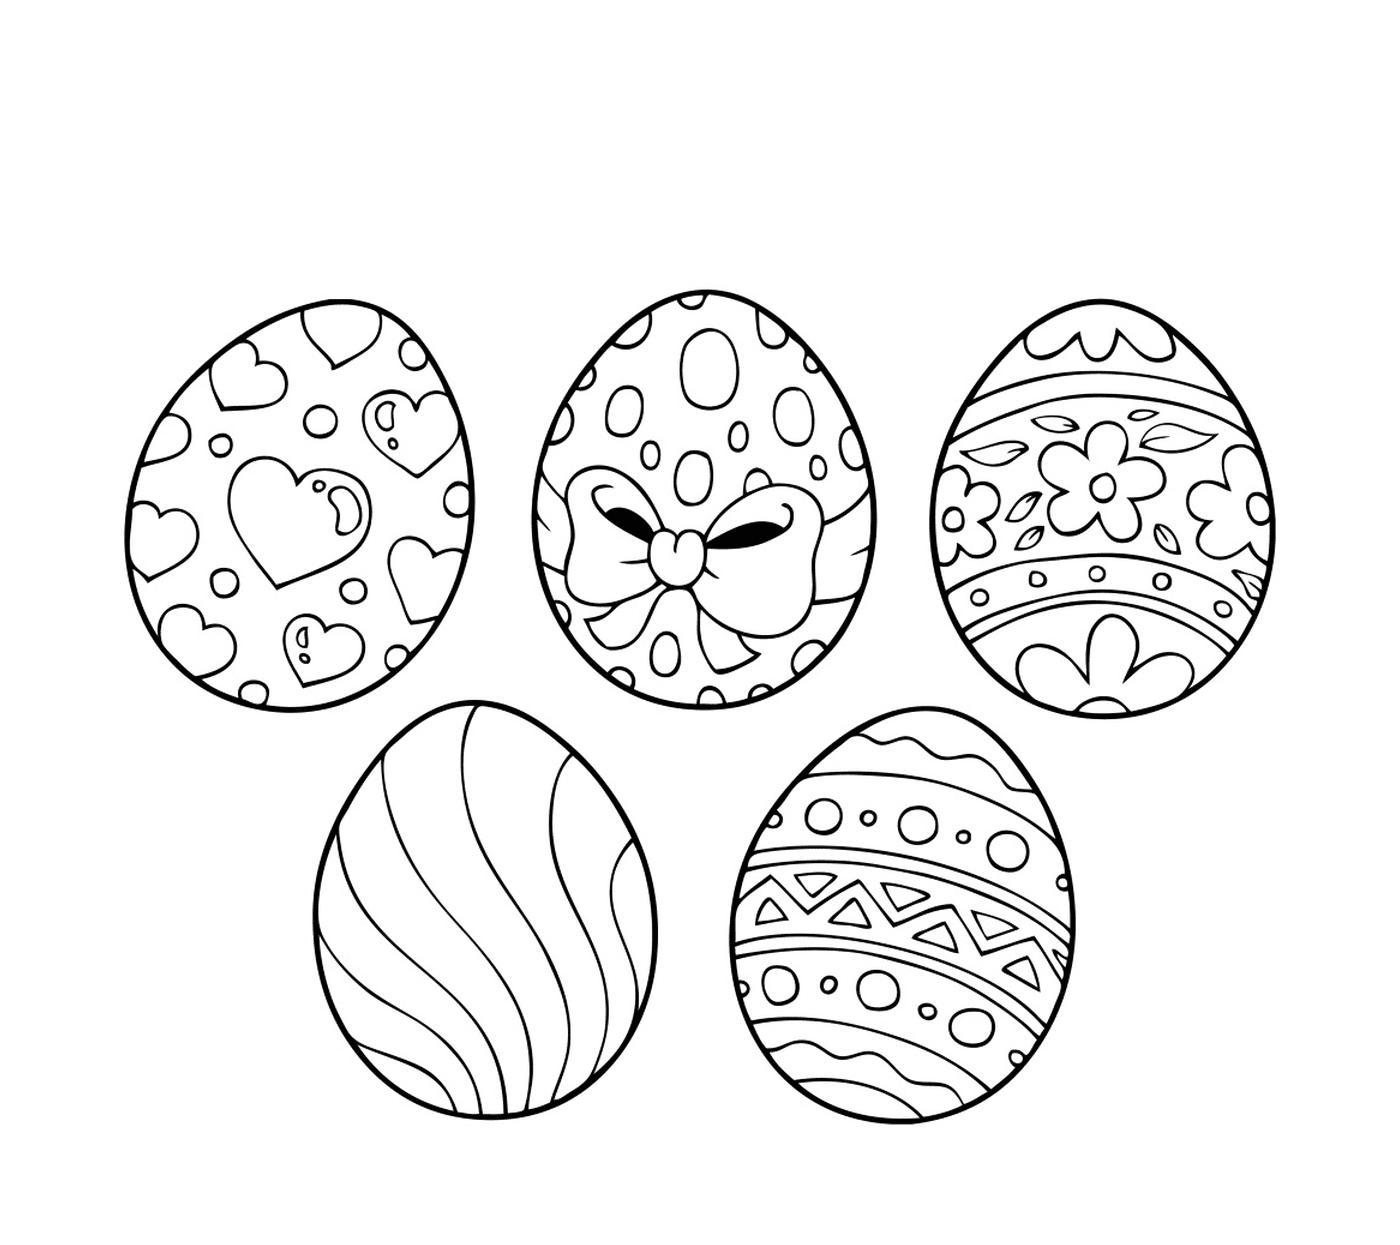  Ostereier 2017, eine Reihe von Ostereiern mit verschiedenen Mustern verziert 